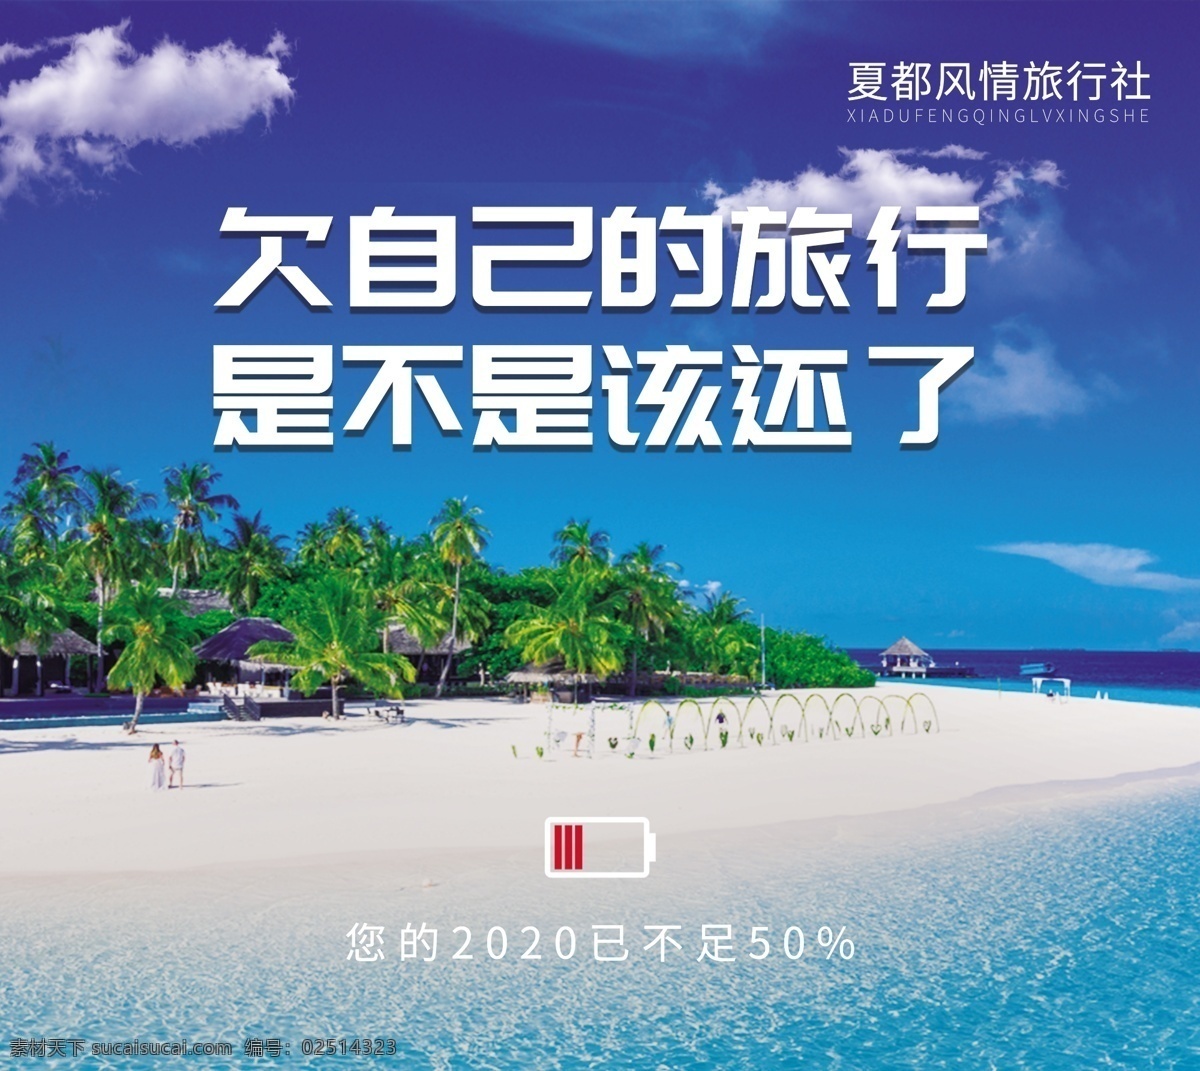 旅行社 广告 旅游 电量不足 文案 沙滩 蓝天 创意 旅行 清新 蓝色